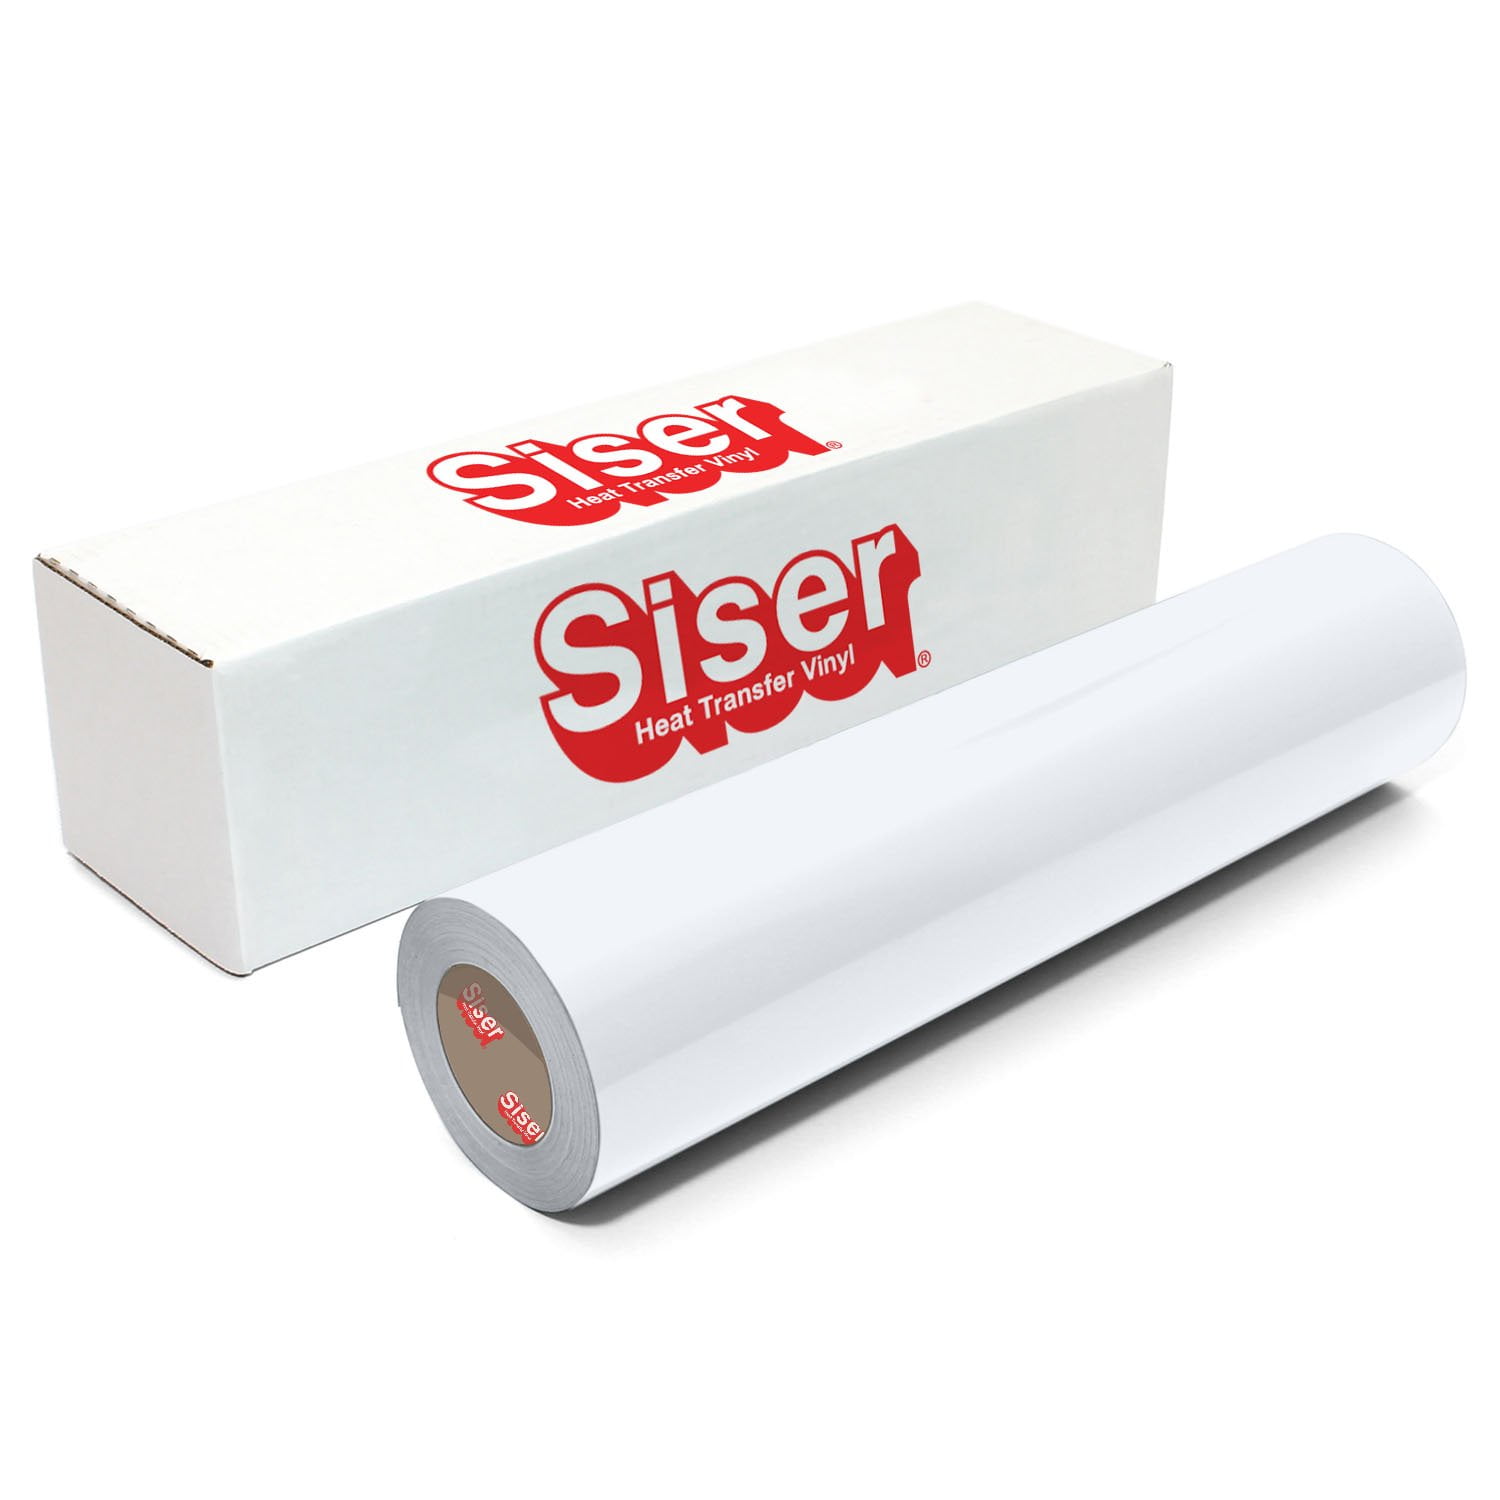 Siser EasyWeed Heat Transfer Vinyl, 12 x 10' Roll - White